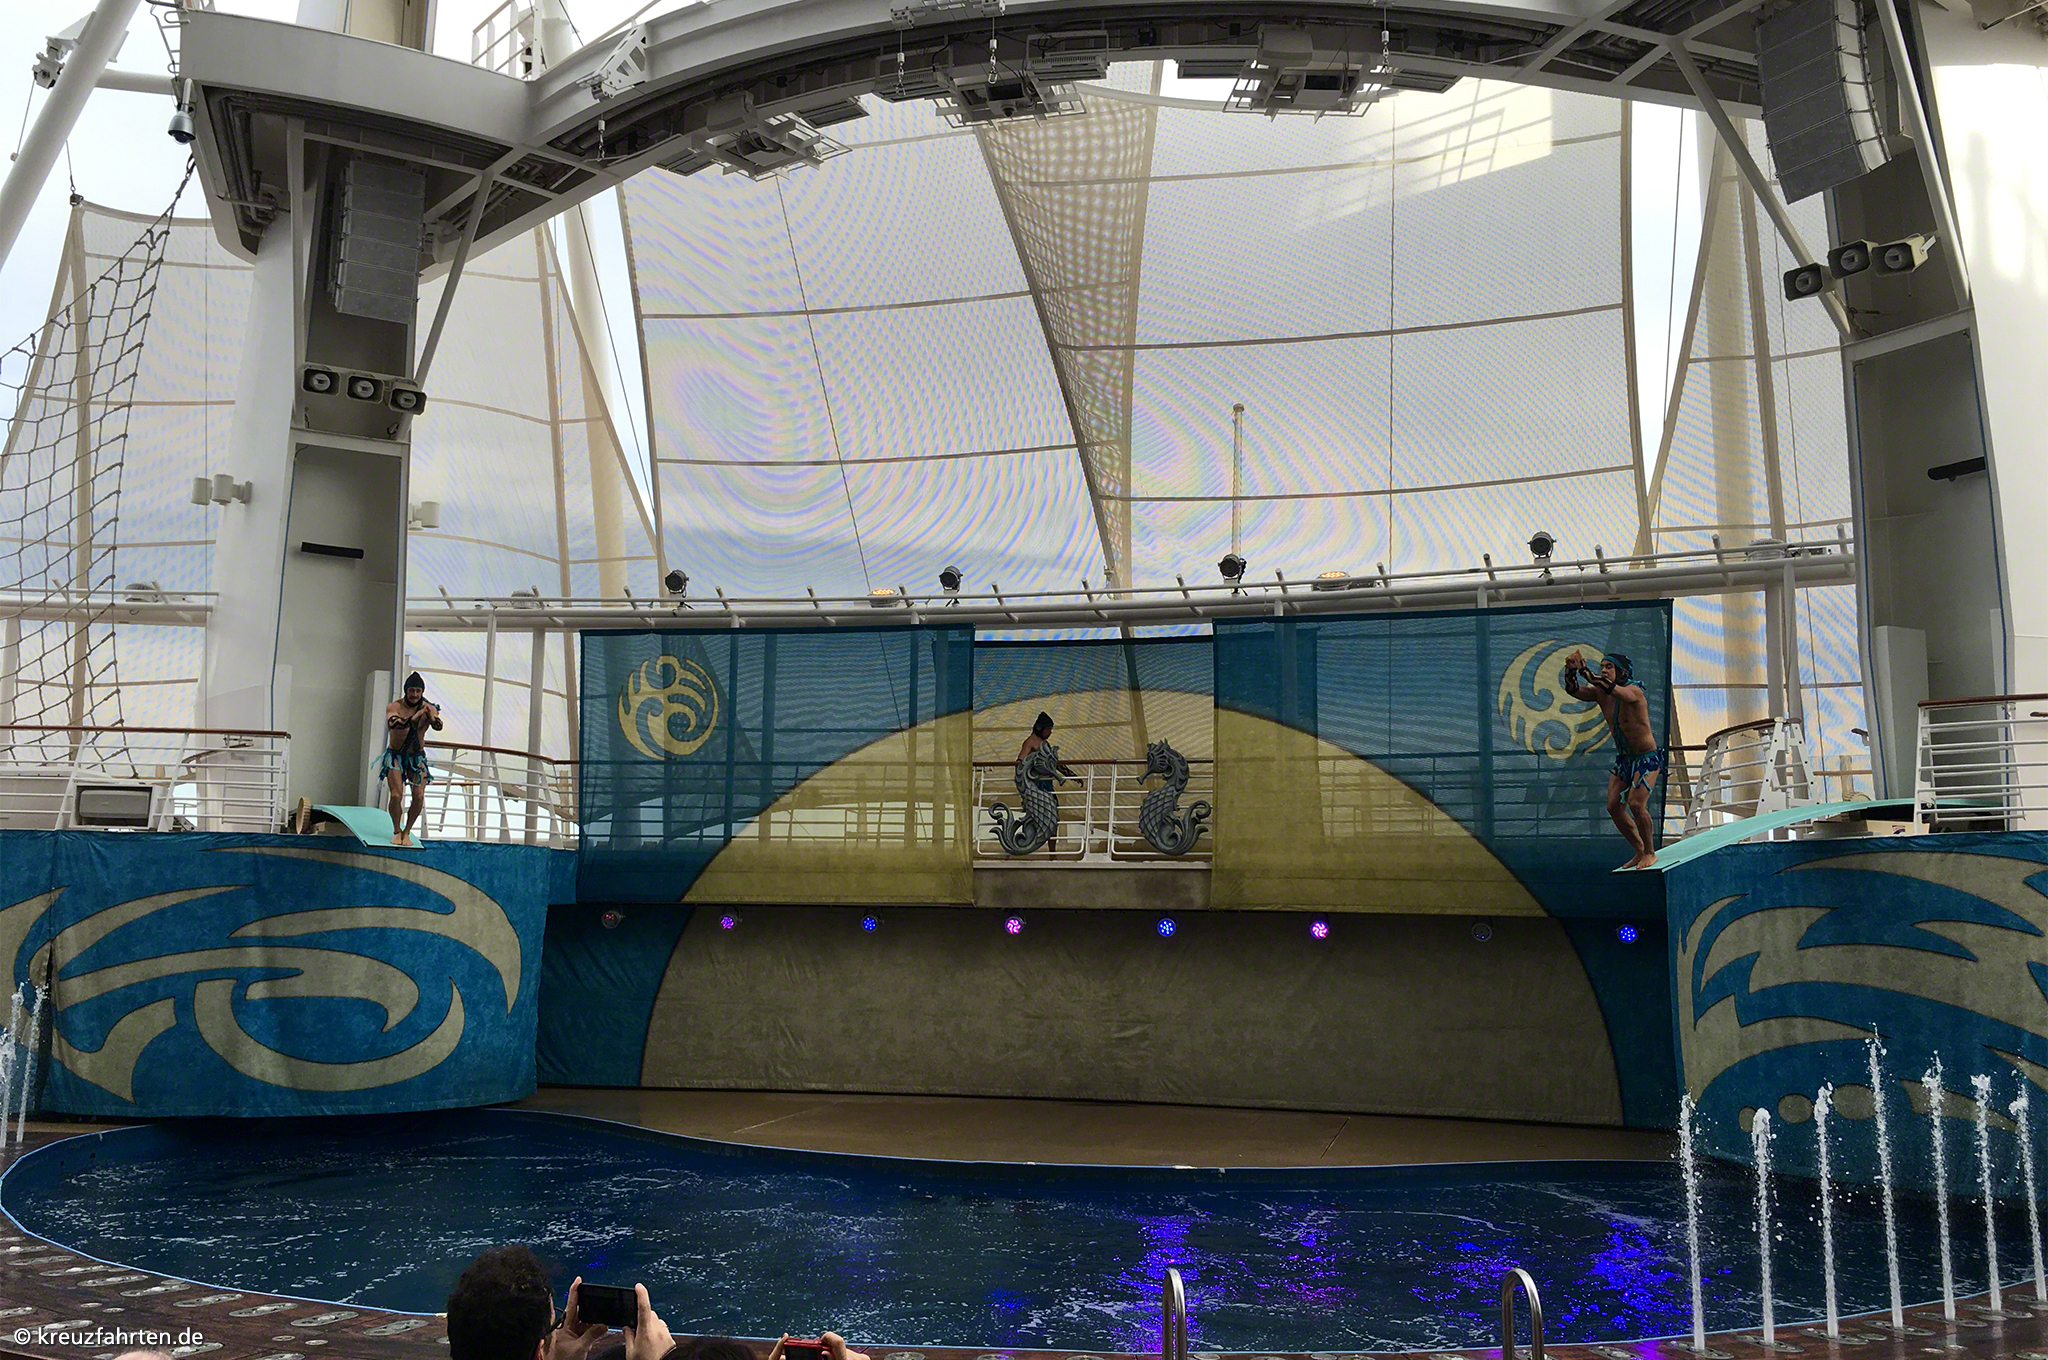 Aquatheater